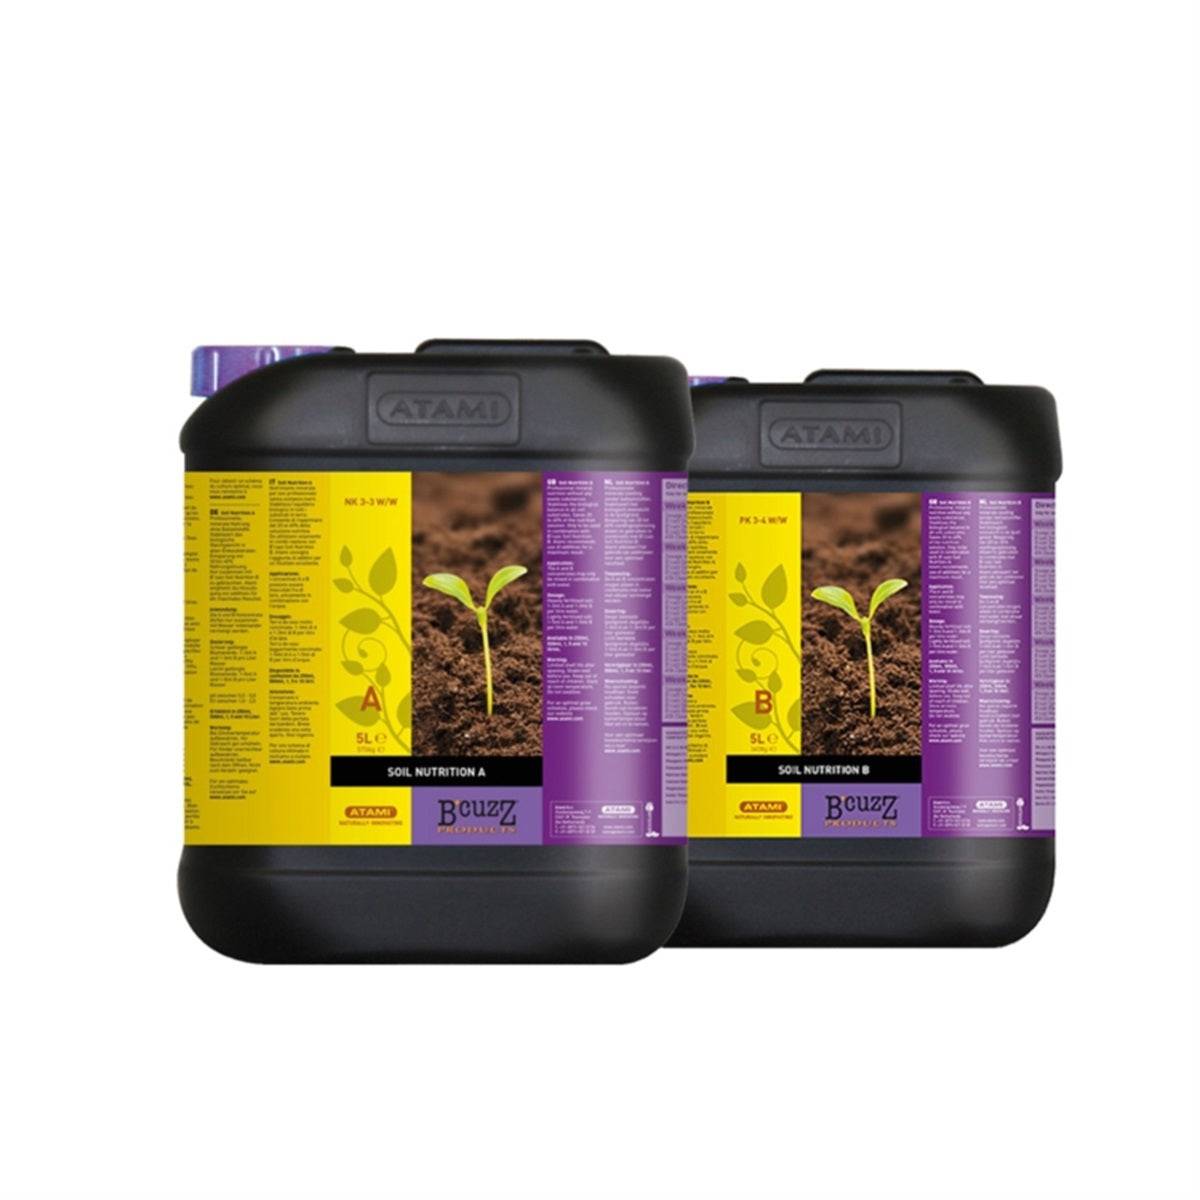 Engrais ATAMI B'cuzz Soil Nutrition 1 litre